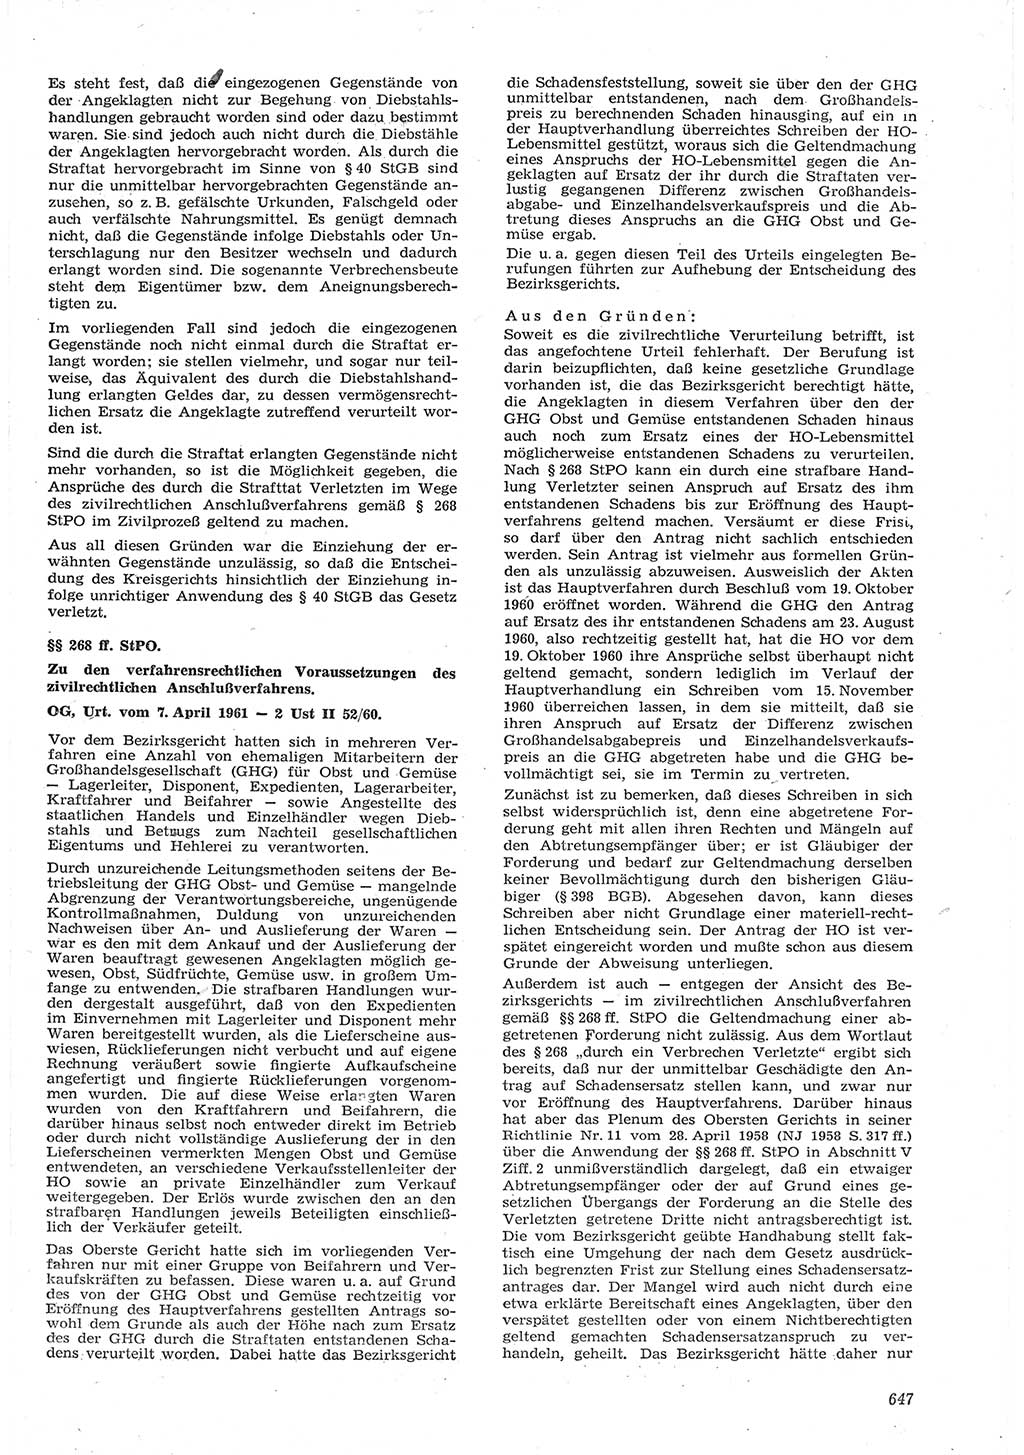 Neue Justiz (NJ), Zeitschrift für Recht und Rechtswissenschaft [Deutsche Demokratische Republik (DDR)], 15. Jahrgang 1961, Seite 647 (NJ DDR 1961, S. 647)